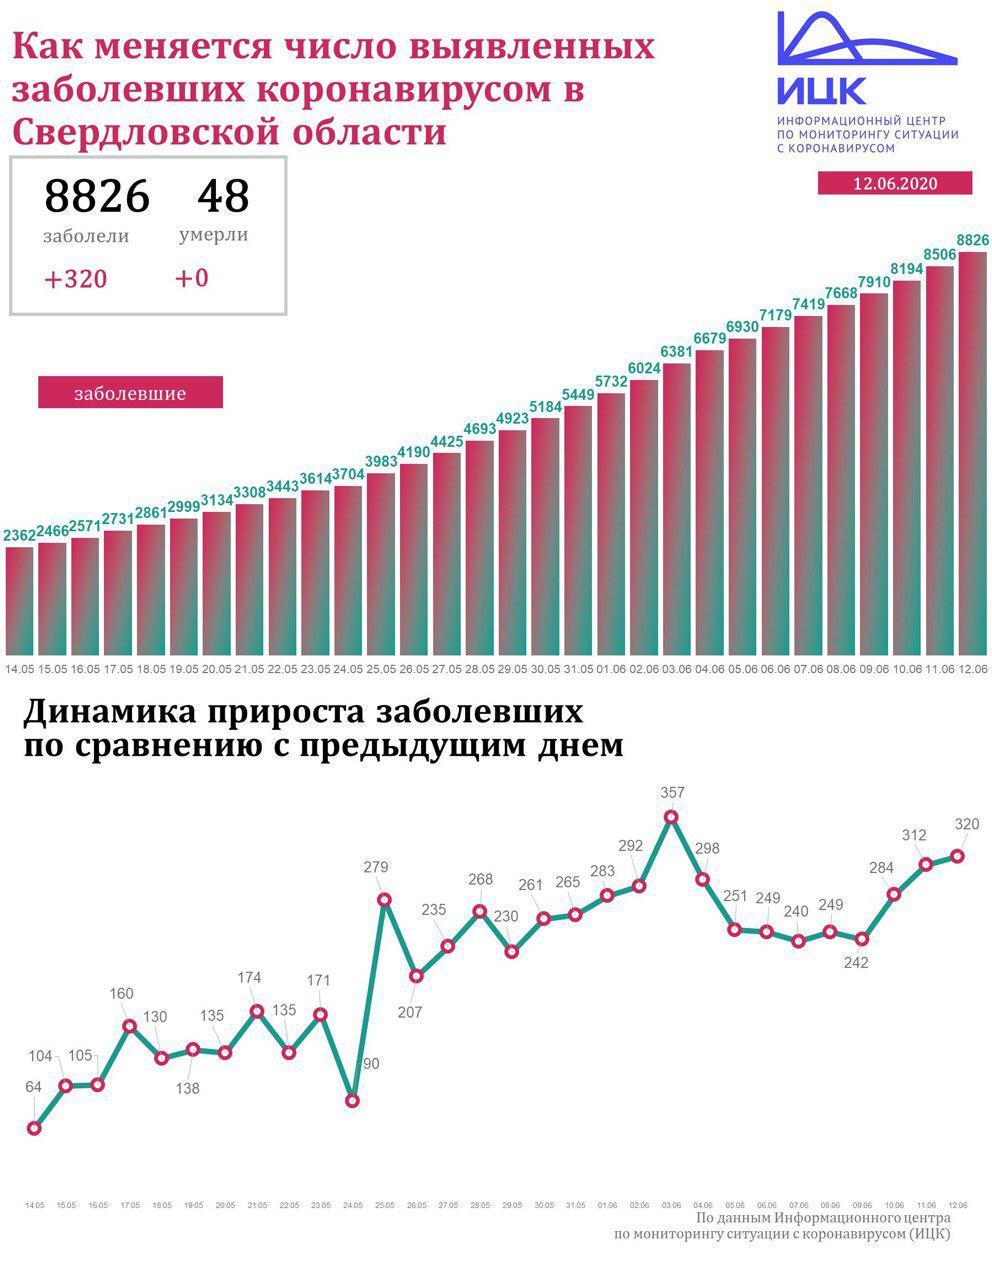 Новый День: В Свердловской области продолжает увеличиваться количество зараженных Covid-19 – 320 новых случаев